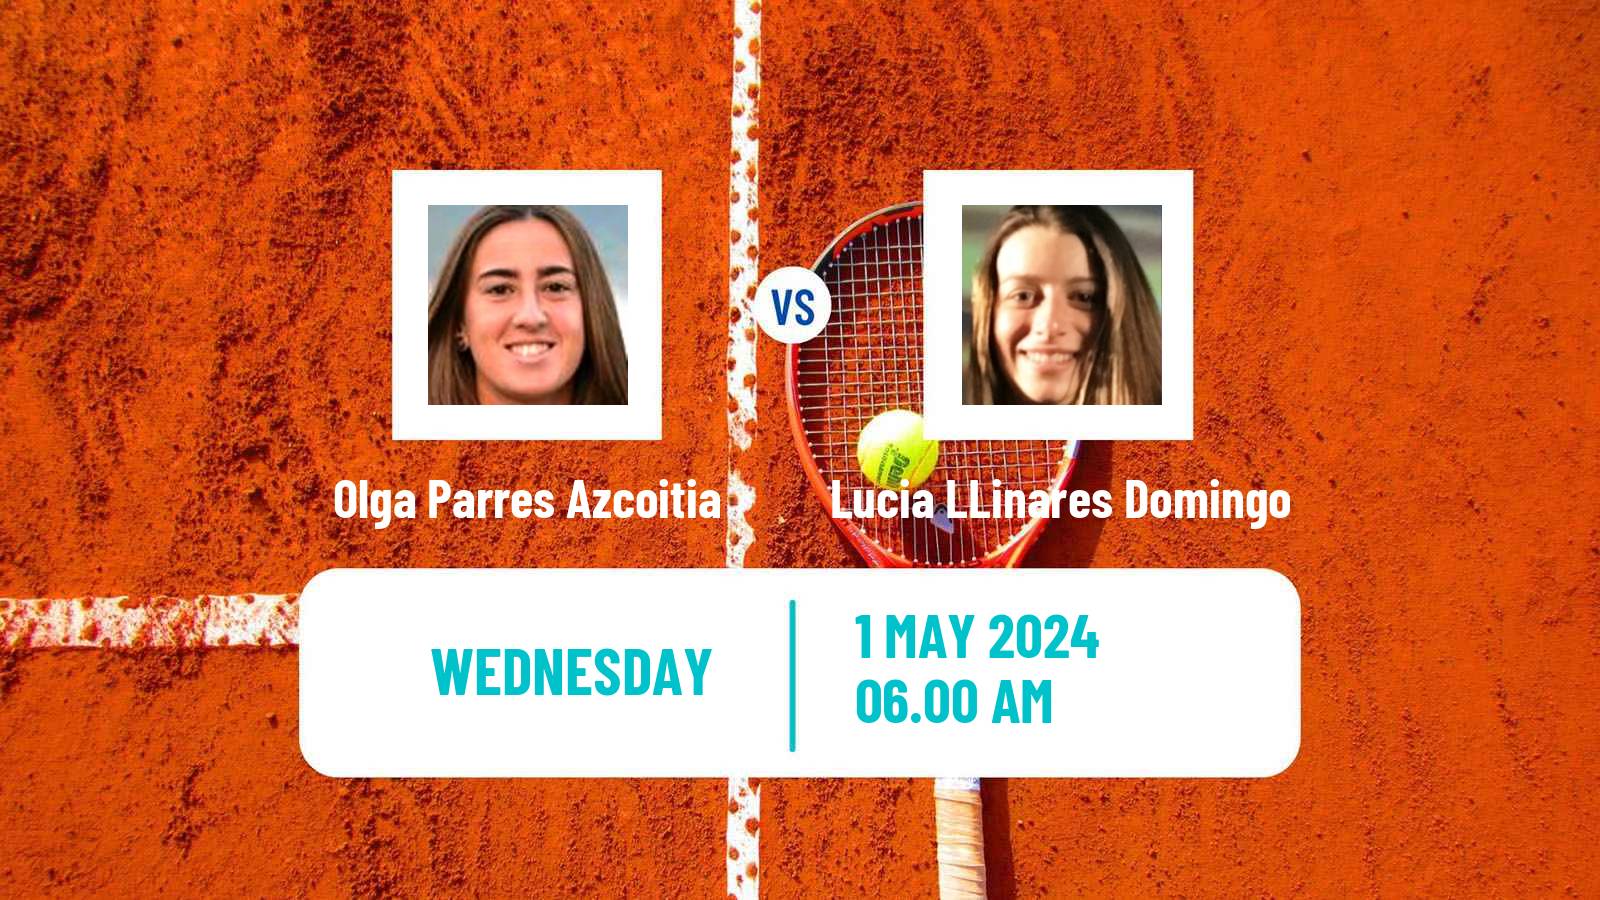 Tennis ITF W35 Yecla Women Olga Parres Azcoitia - Lucia LLinares Domingo